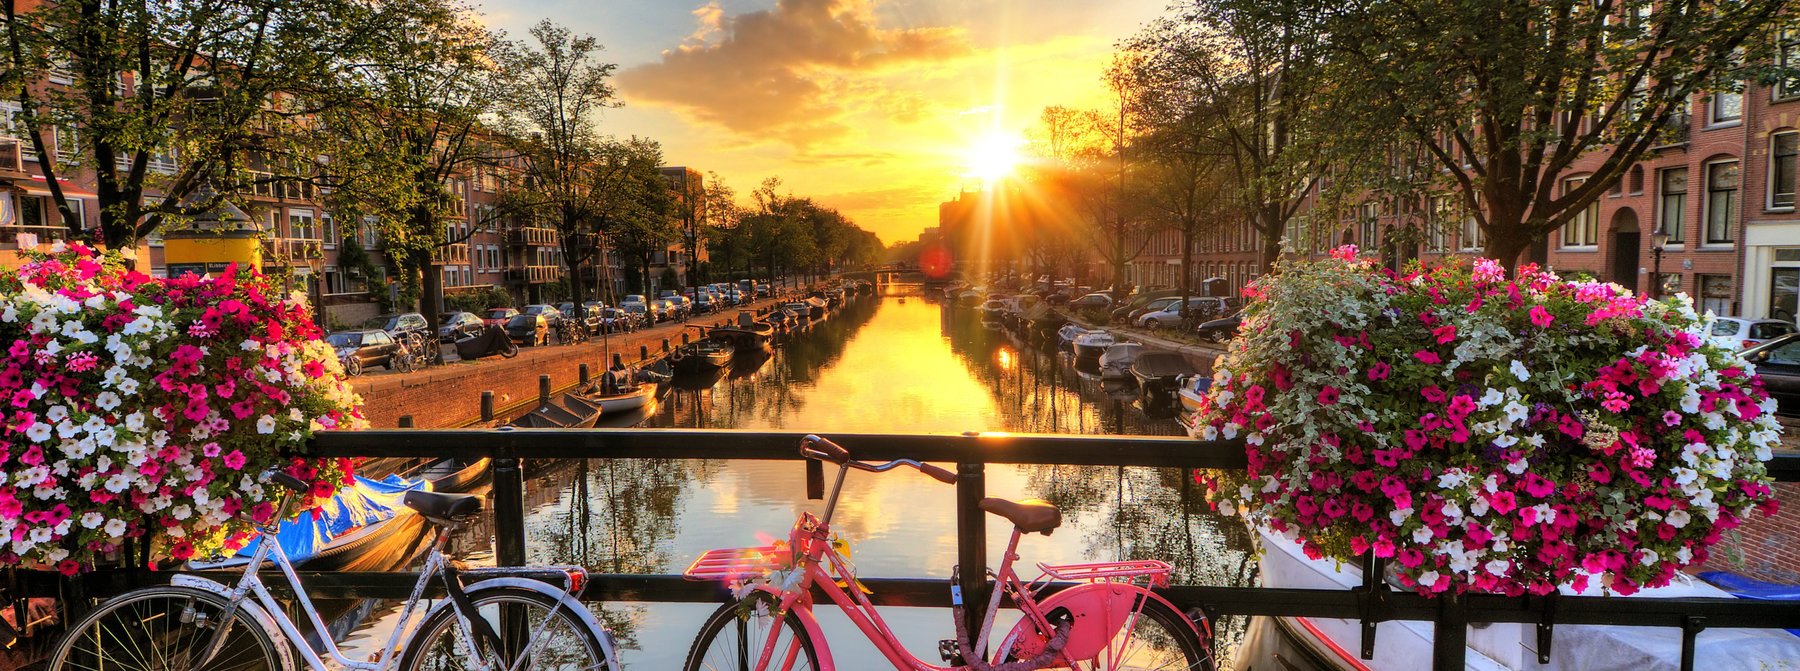 Sonnenuntergang in einer Gracht von Amsterdam, Niederlande